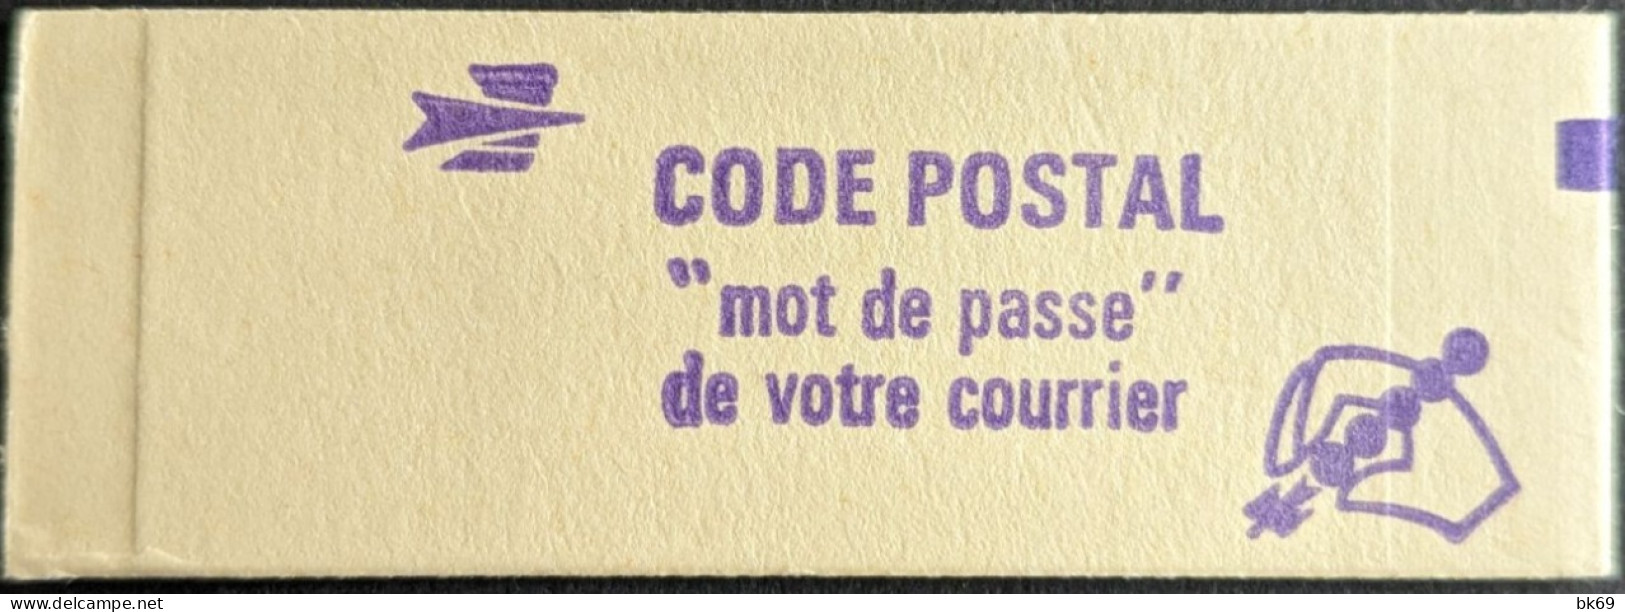 1972 C1a Conf. - Gomme Mate Tropical Carnet Fermé Sabine 1F Rouge Cote 44€ - Modernes : 1959-...